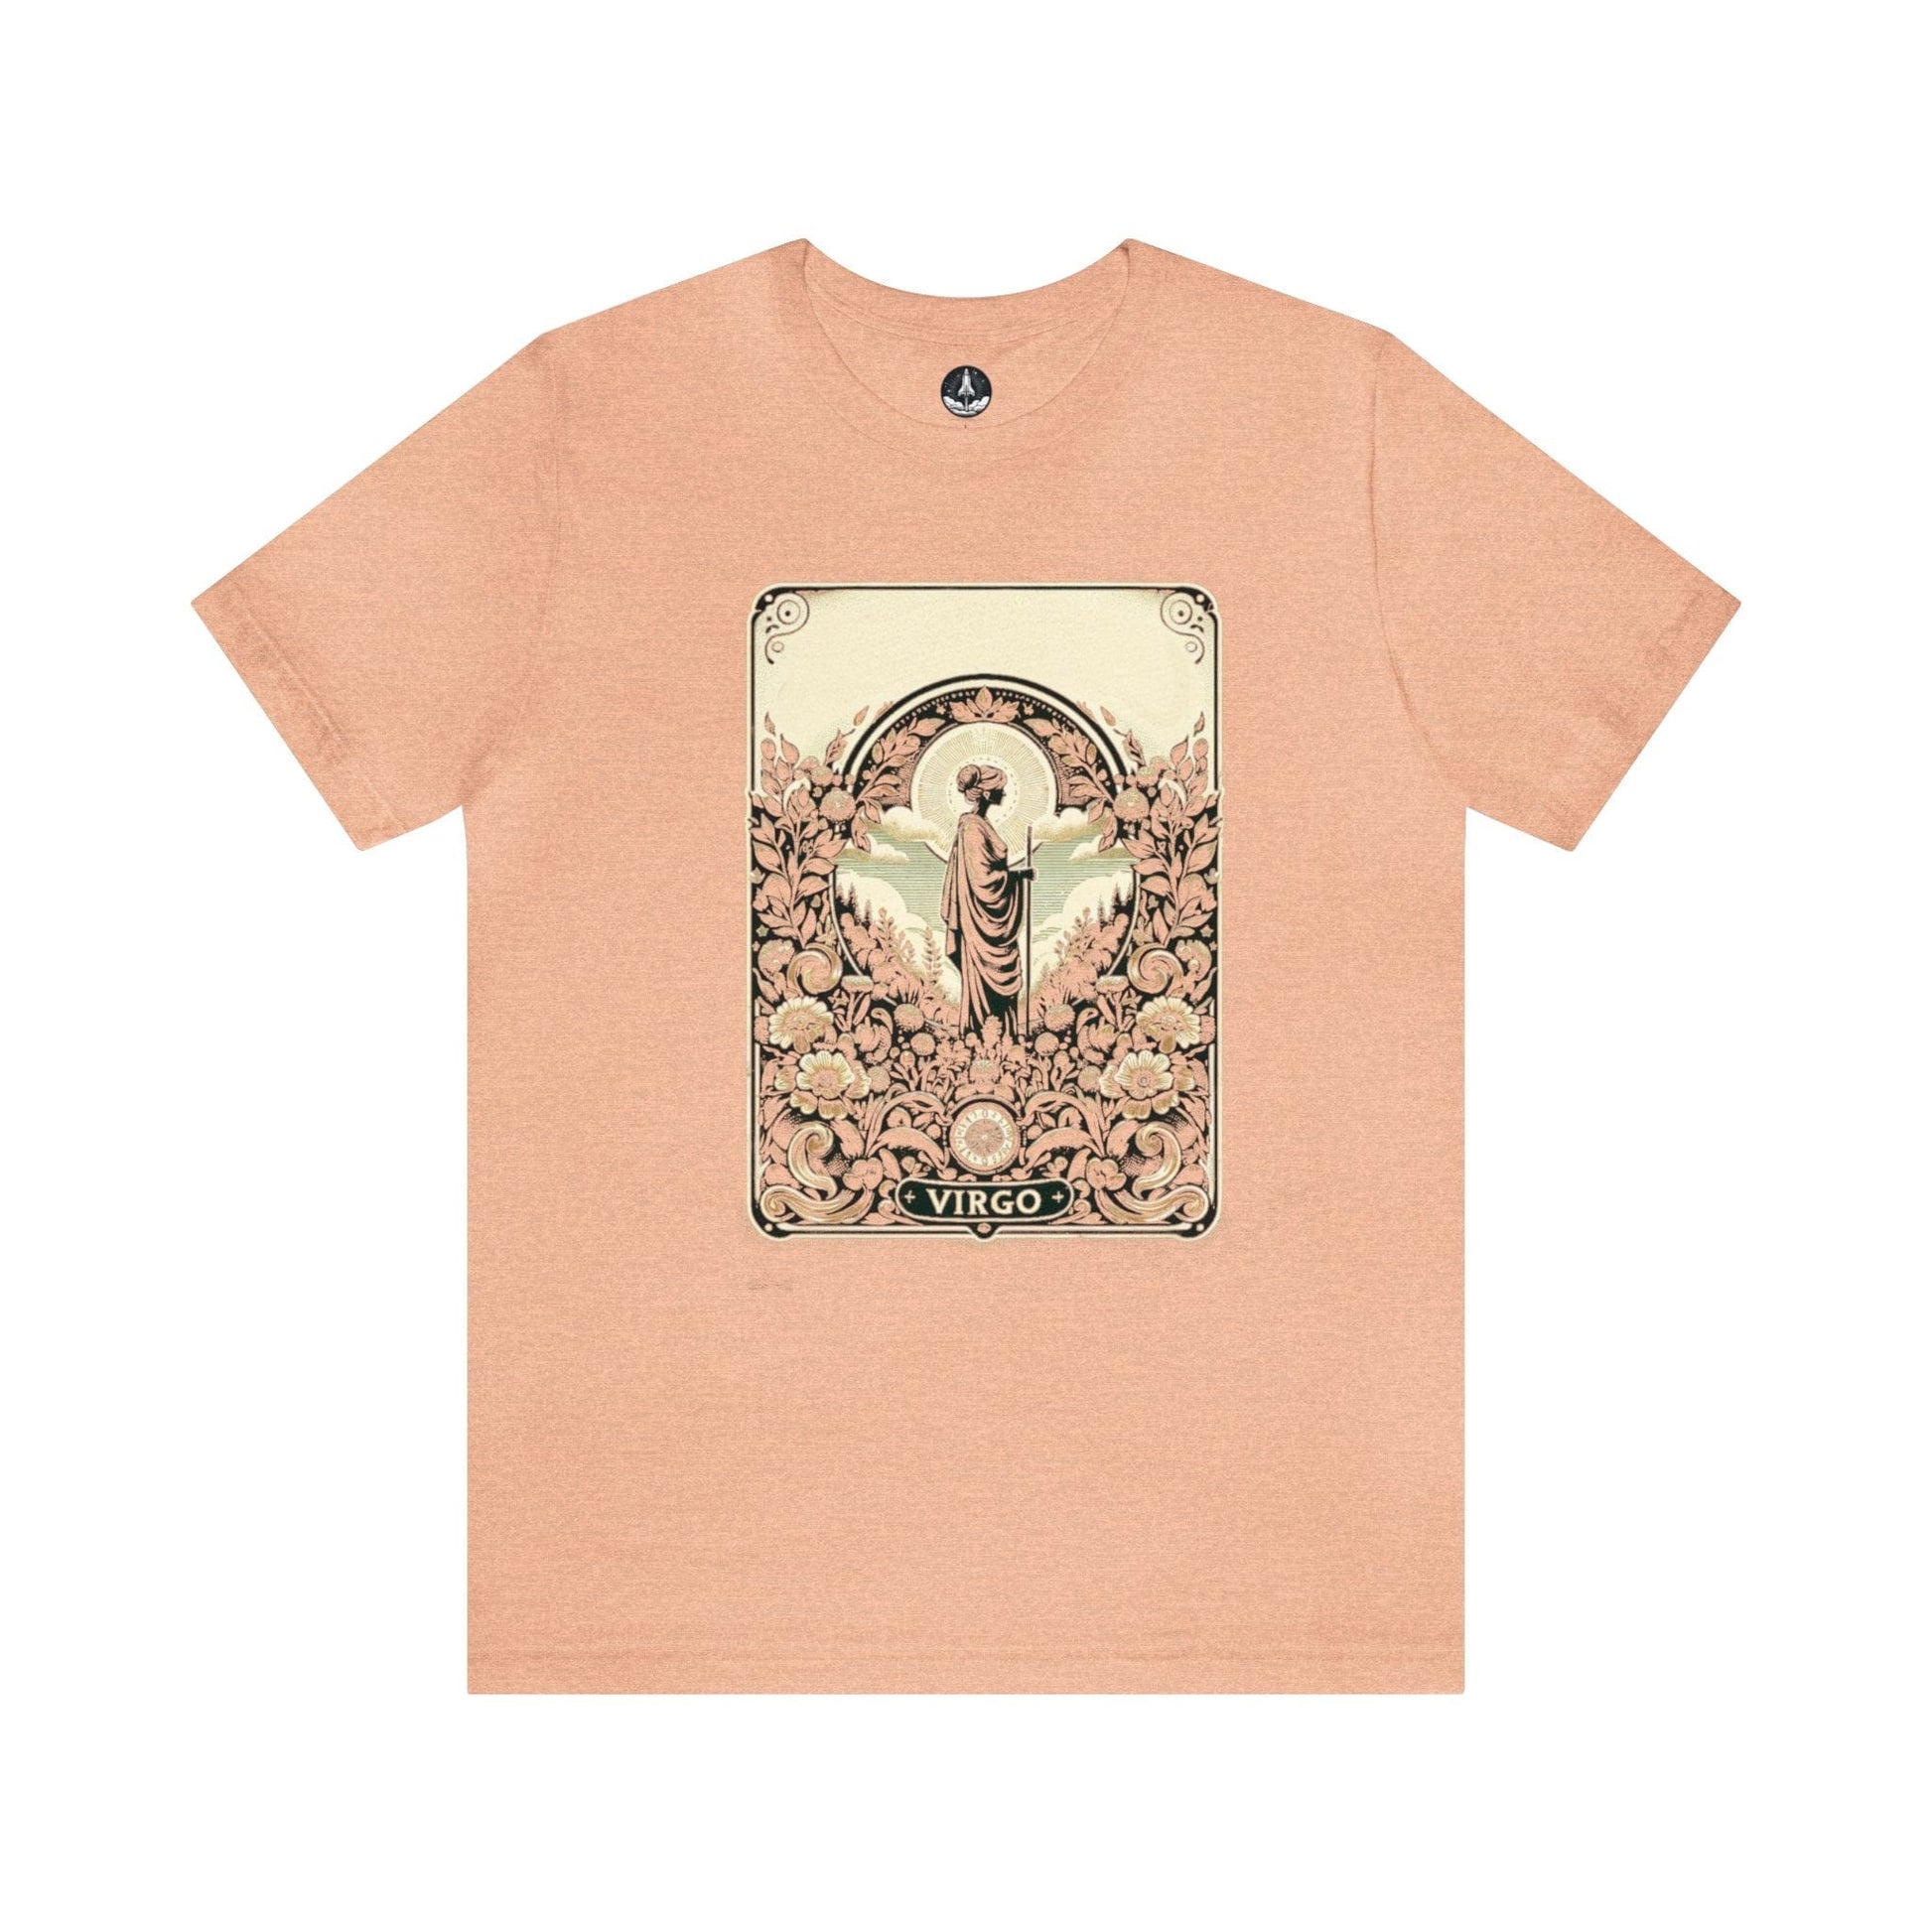 T-Shirt Heather Peach / S The Hermit's Garden: Virgo T-Shirt